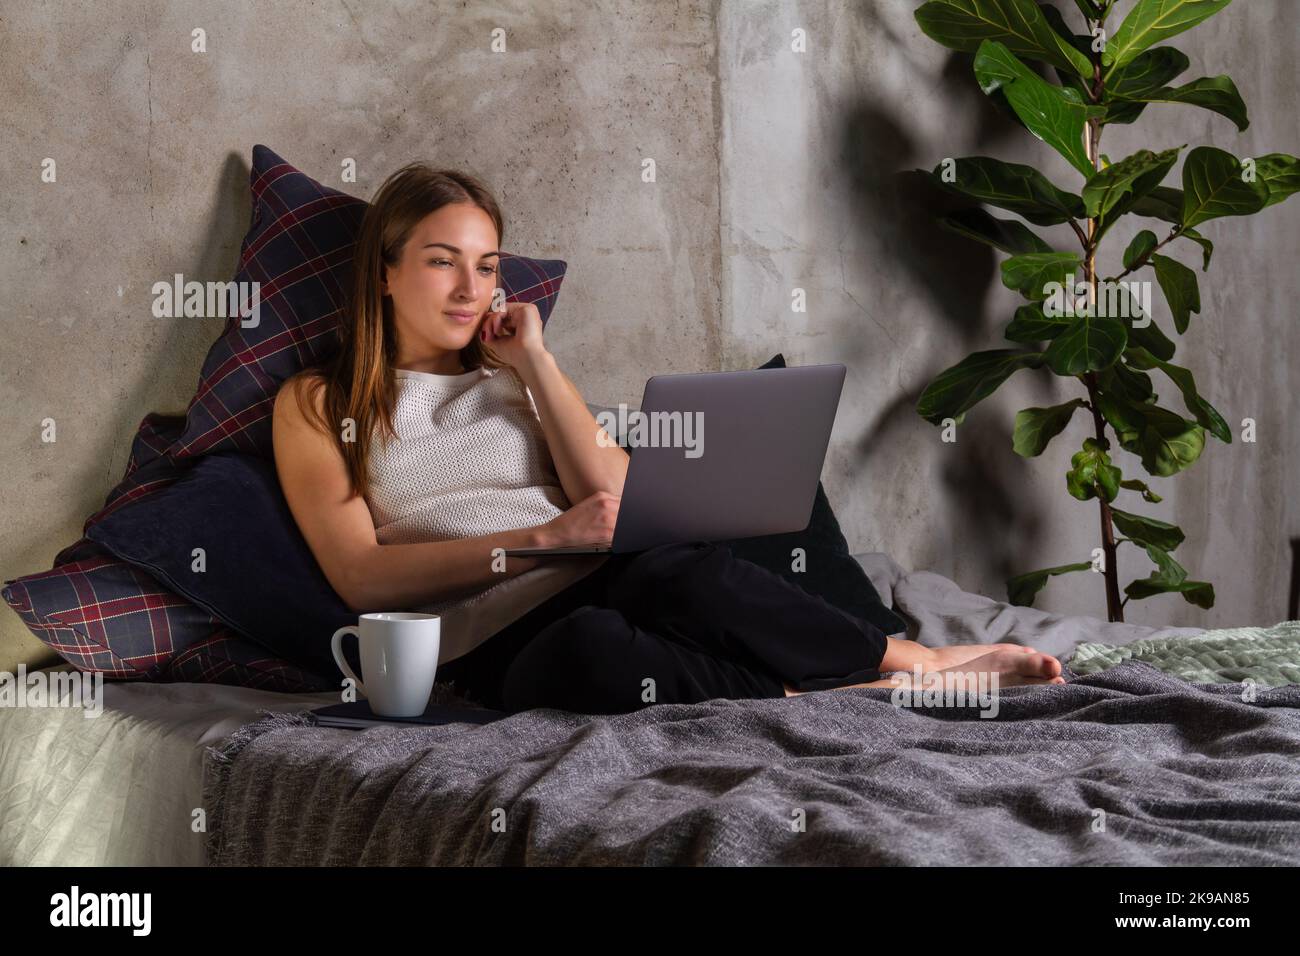 Donna in una parte superiore bianca seduta su un letto, guardando uno schermo di un notebook con una tazza bianca da parte Foto Stock